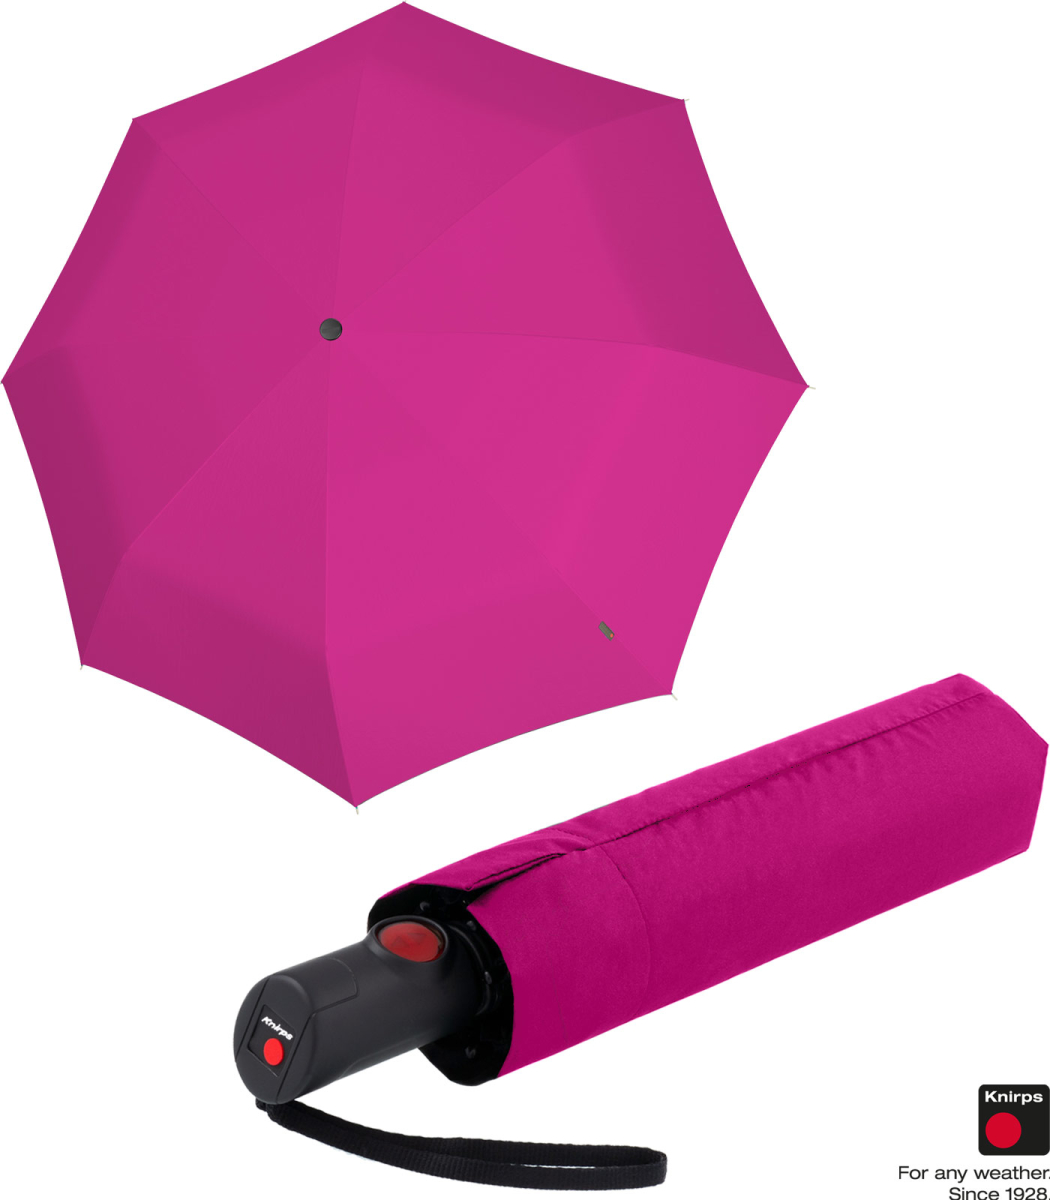 Knirps Taschenschirm C.205 medium duomatic - pink, 32,99 €